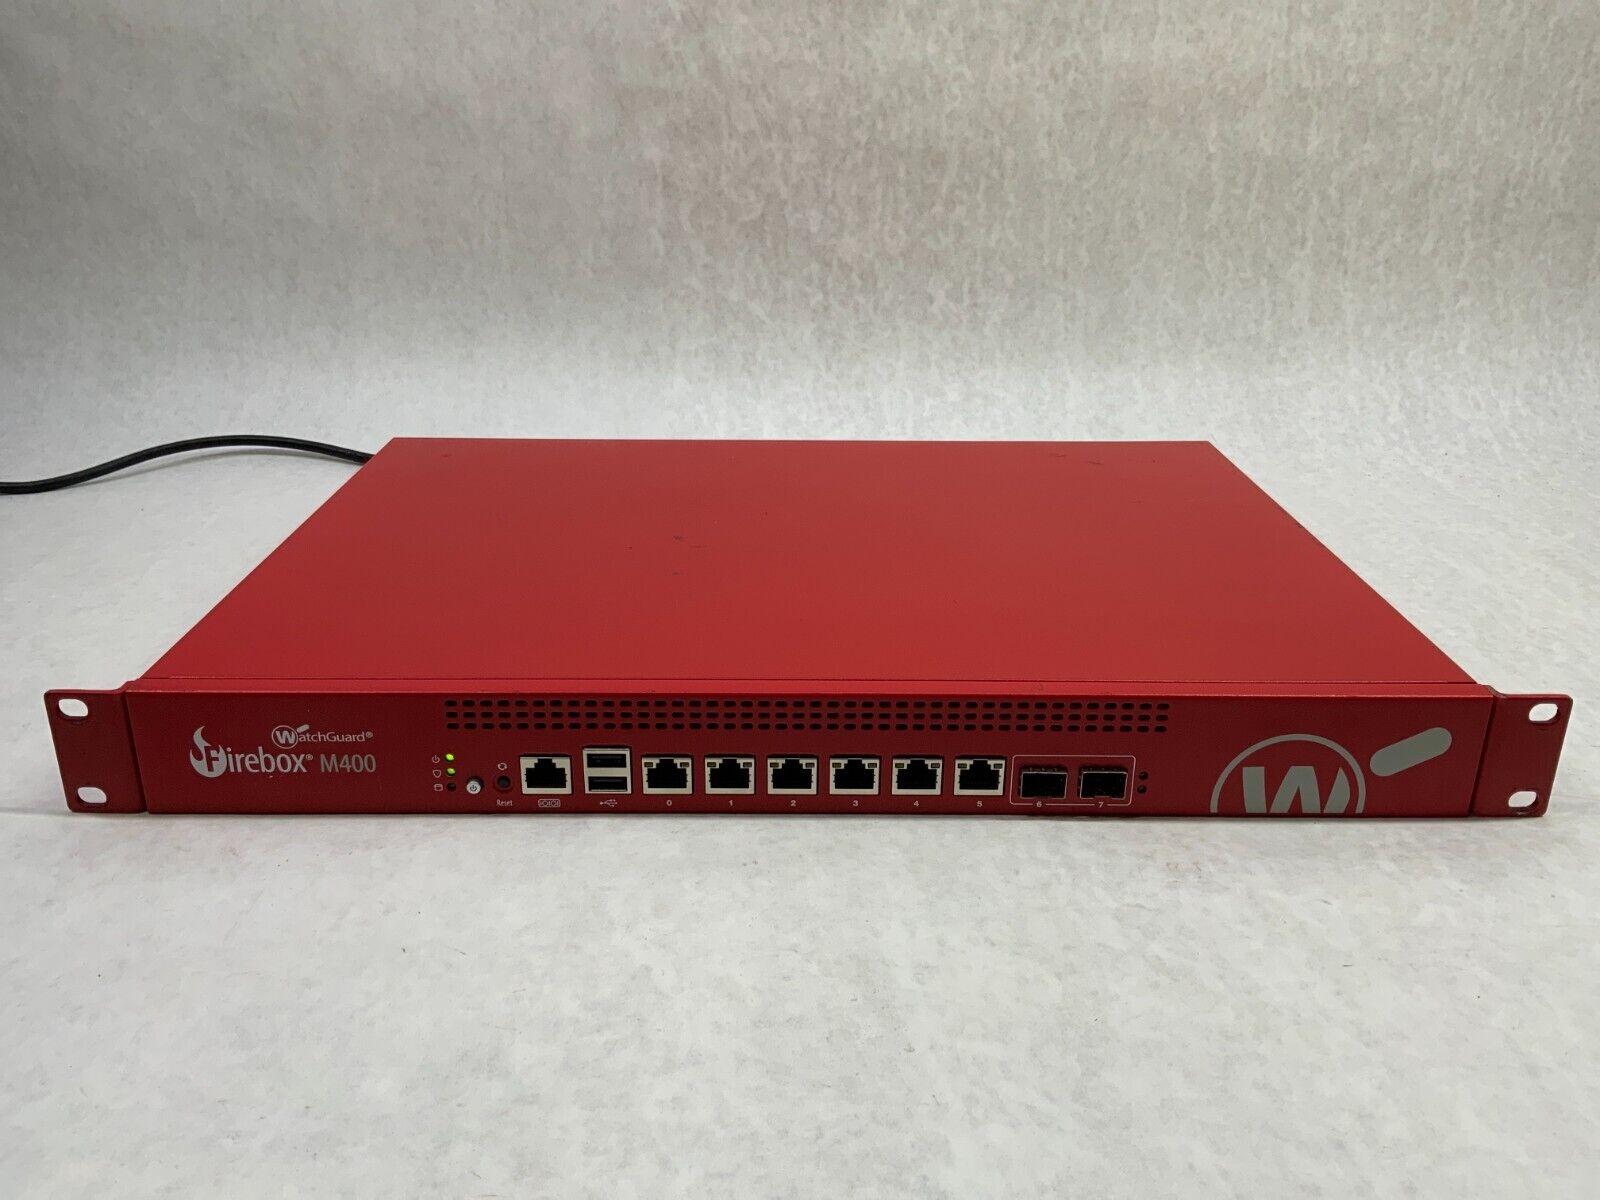 WatchGuard FireBox M400 Gigabit Managed Firewall 8Gbps Throughput KL5AE8